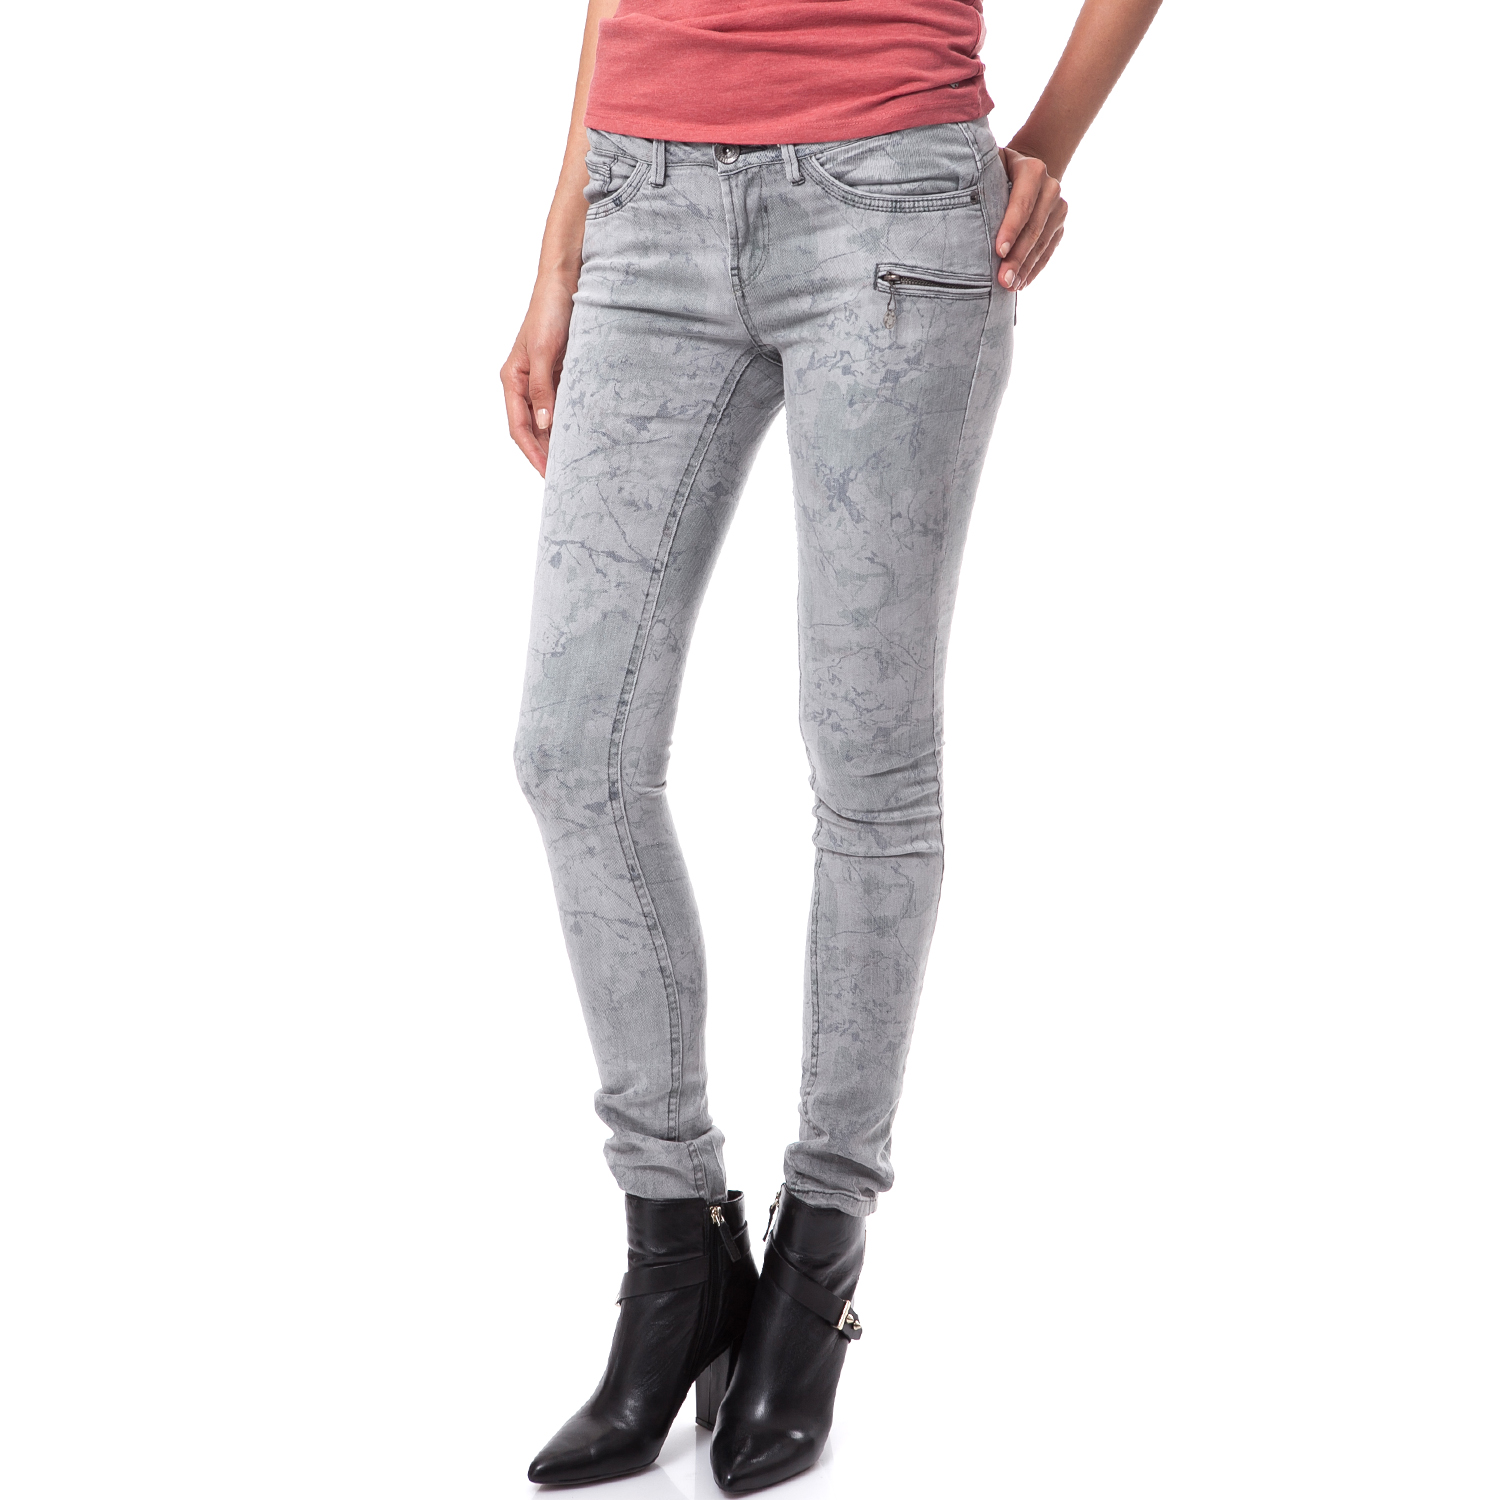 Γυναικεία/Ρούχα/Παντελόνια/Skinny GARCIA JEANS - Γυναικείο παντελόνι Garcia Jeans γκρι